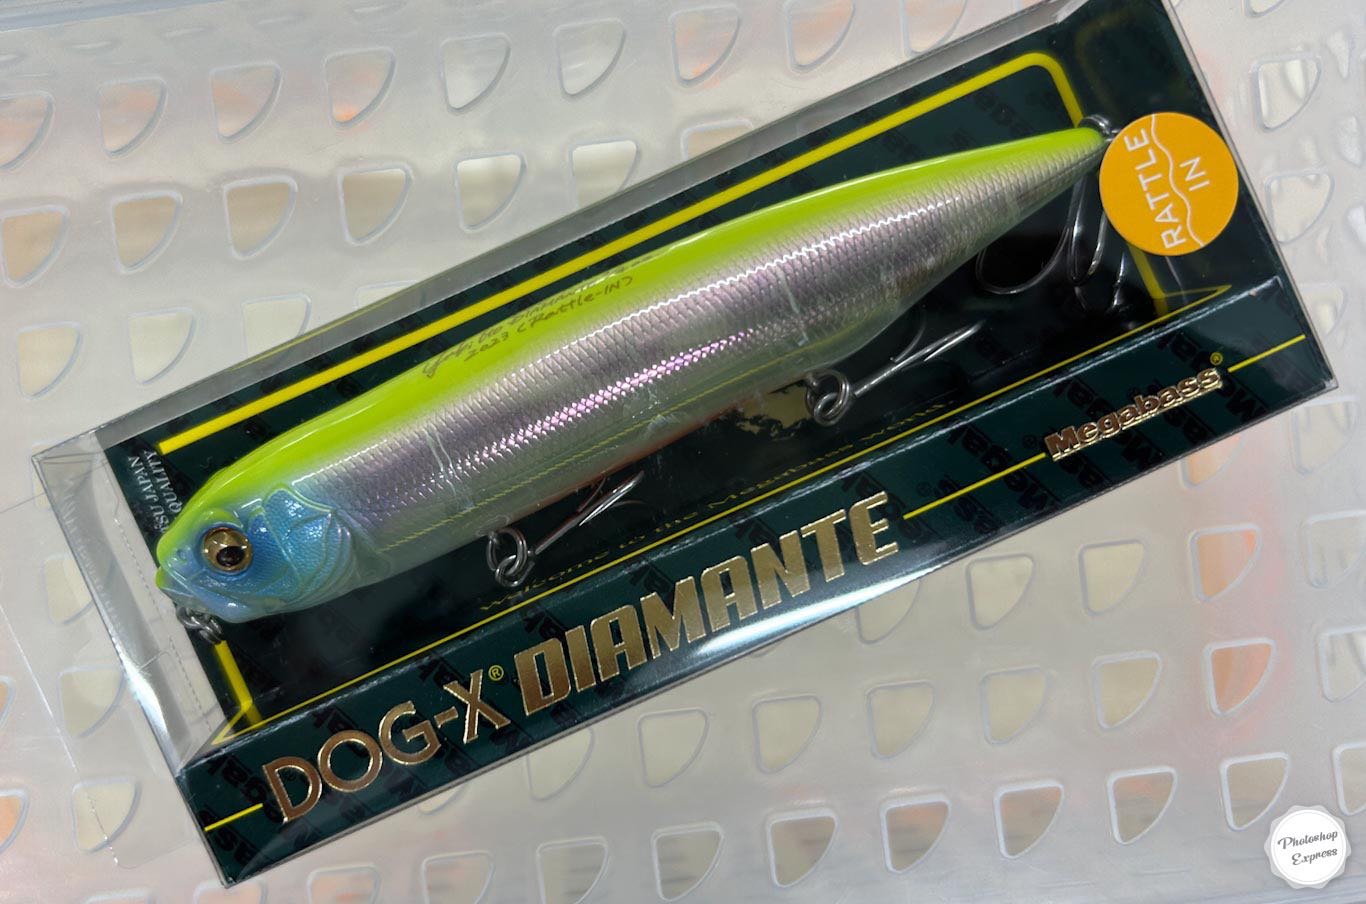 DOG-X DIAMANTE Rattle in AURORA REACTION